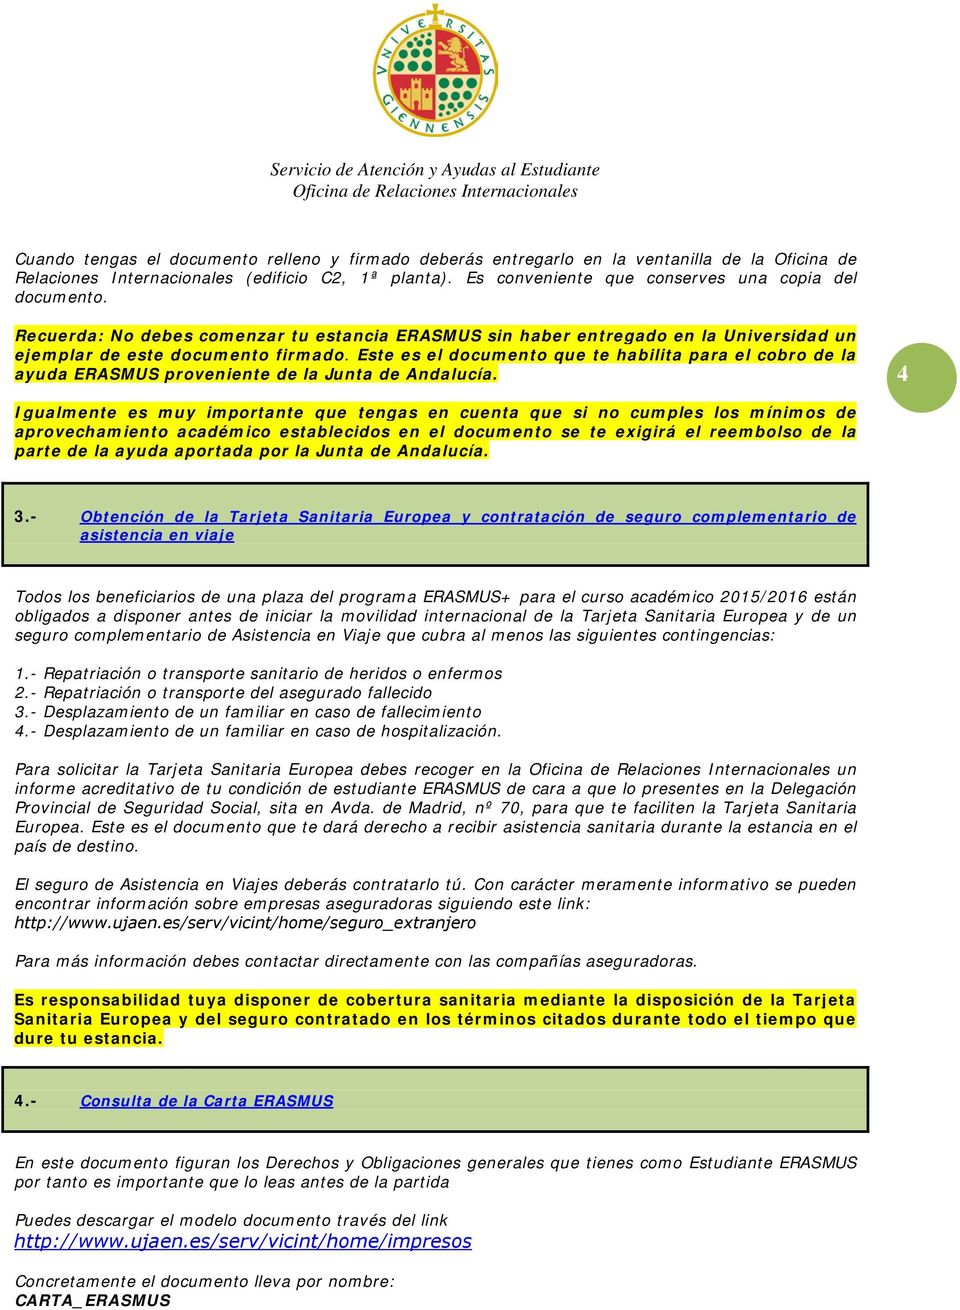 Este es el documento que te habilita para el cobro de la ayuda ERASMUS proveniente de la Junta de Andalucía.